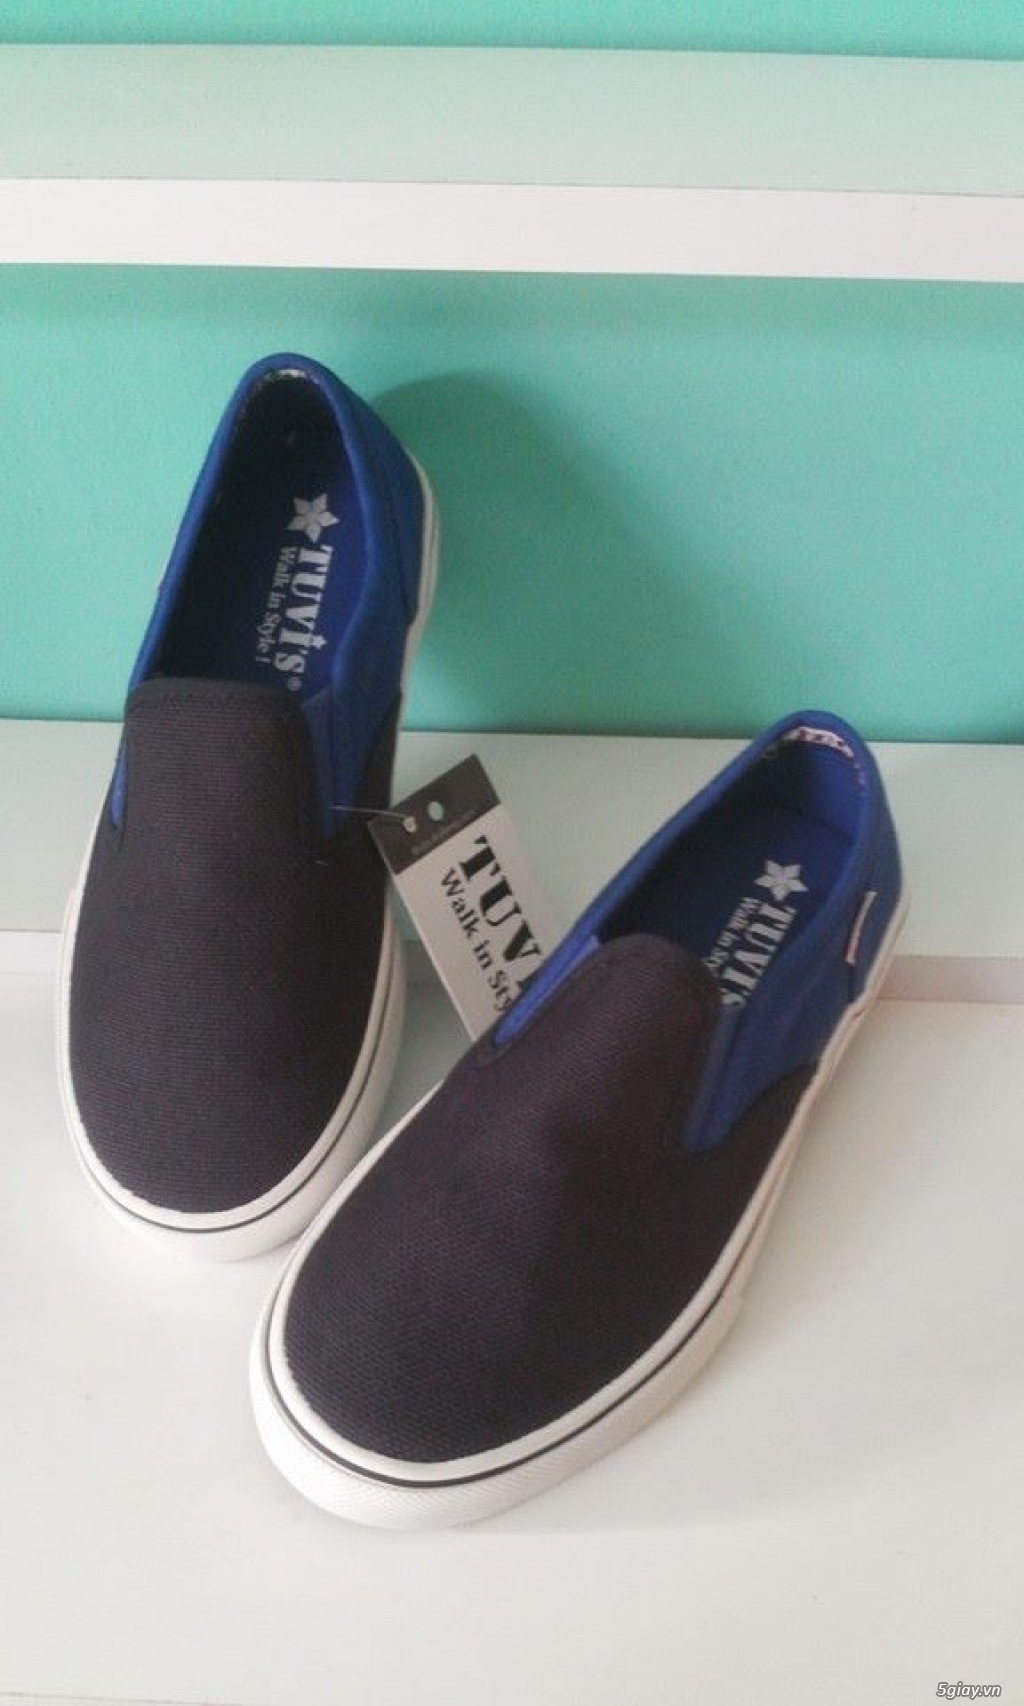 Giày TUVI'S chính hãng - Chuyên cung cấp sỉ & lẻ giày vải búp bê, slip on,dây hiệu Tuvi's... giá rẻ - 22